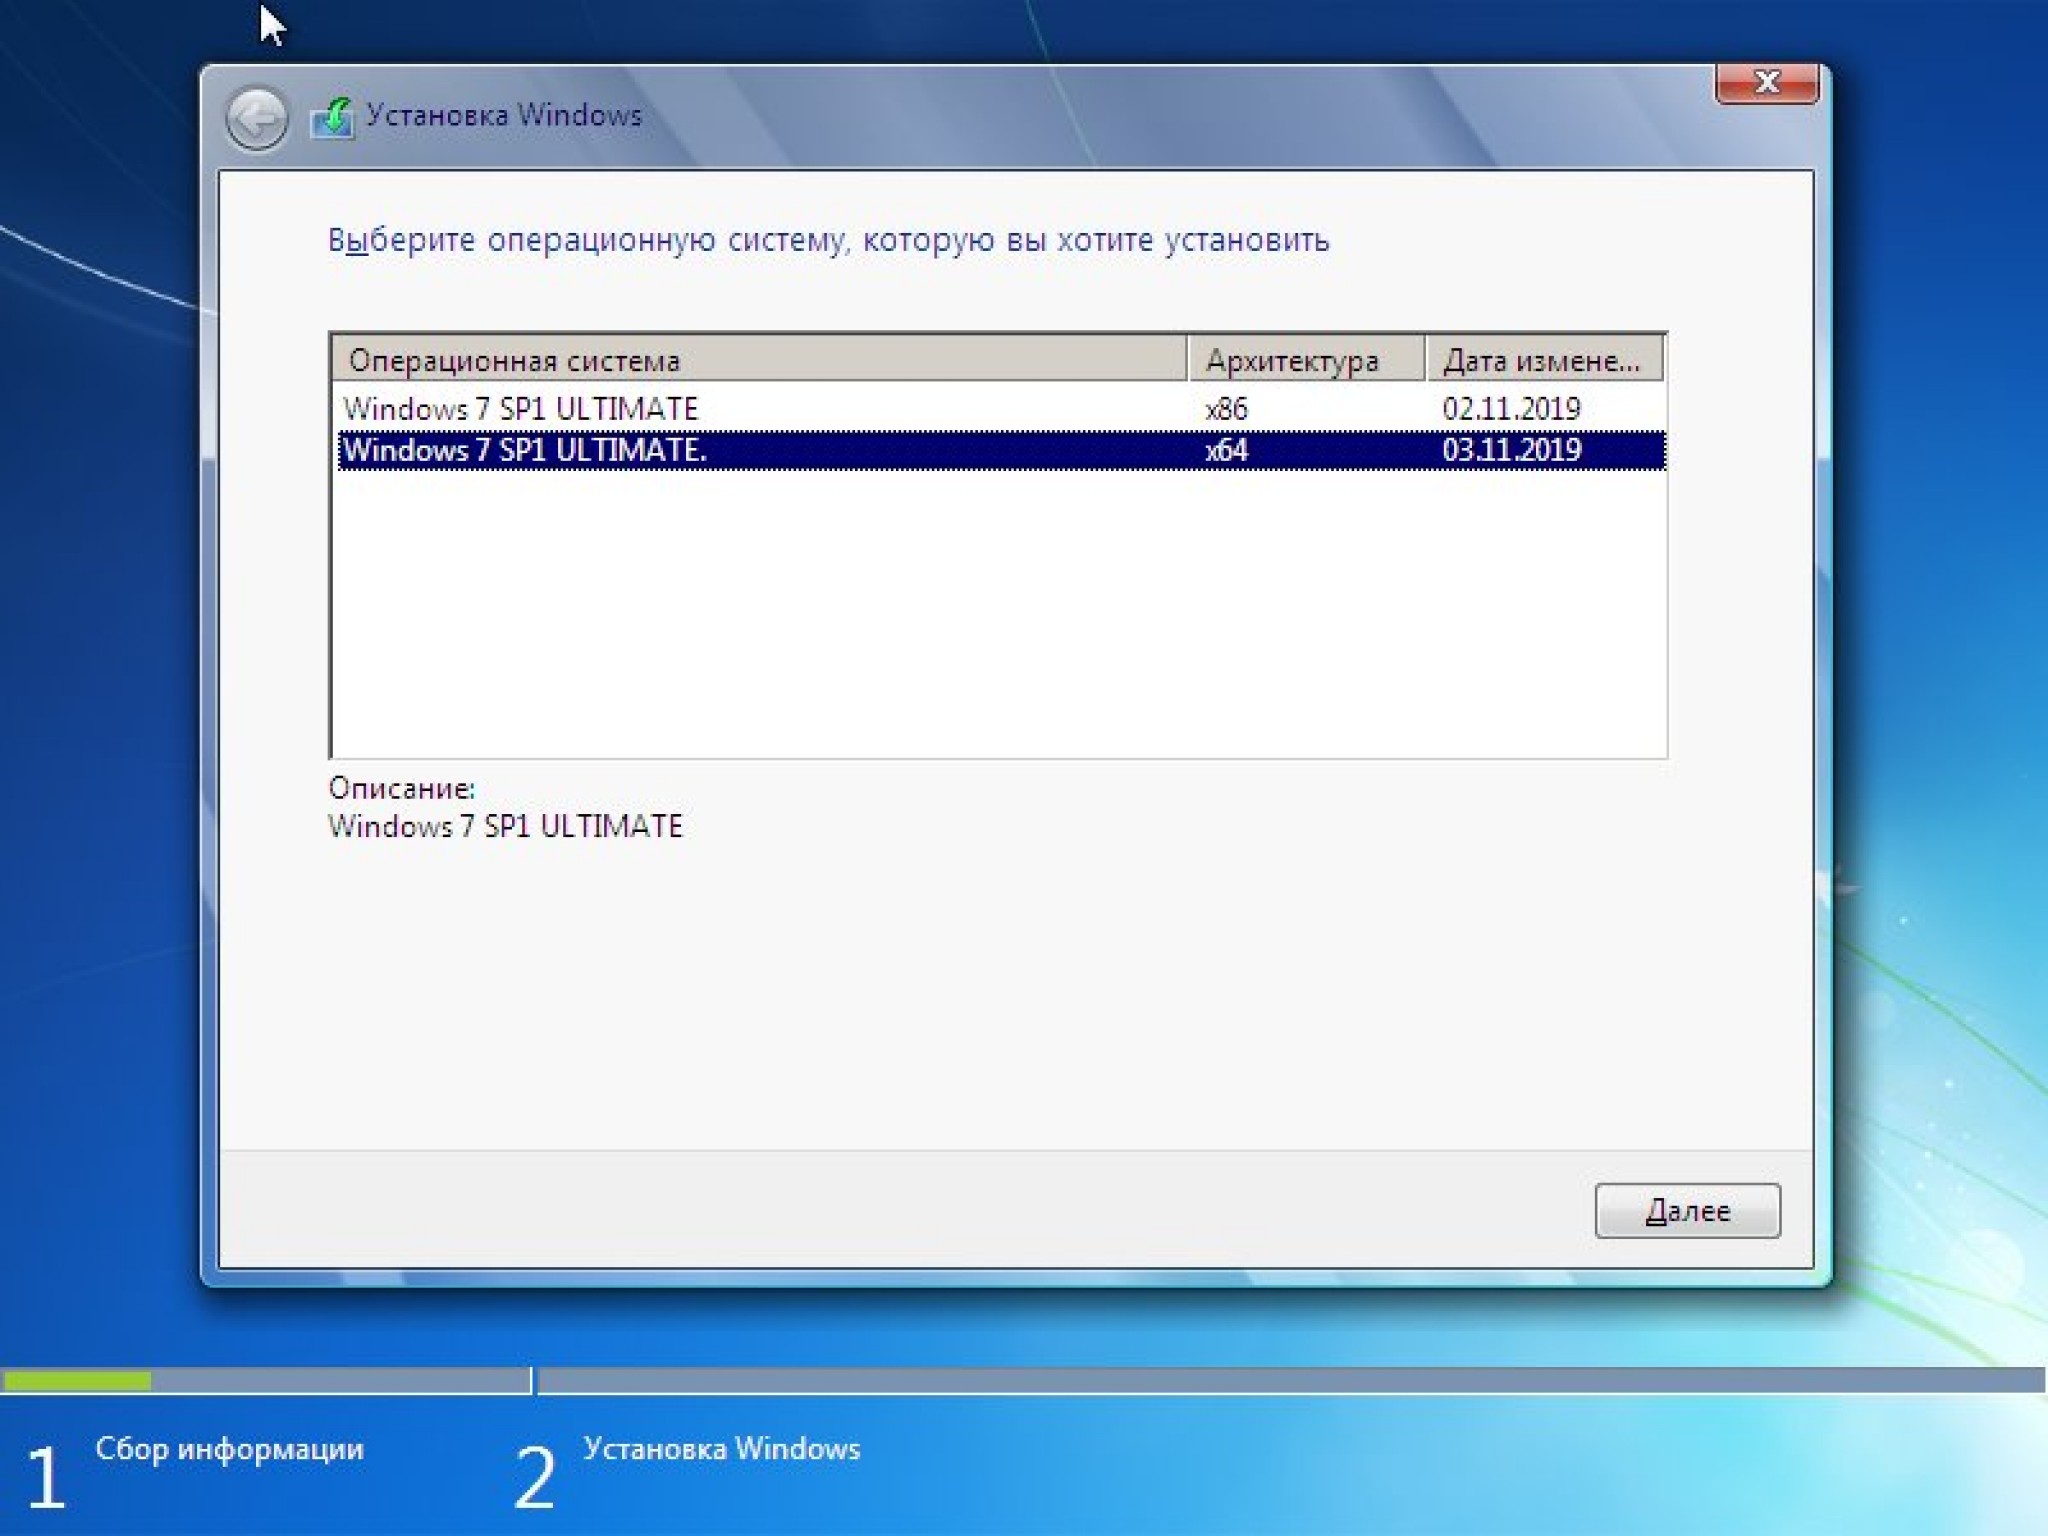 ОС Windows 7 профессиональная sp1